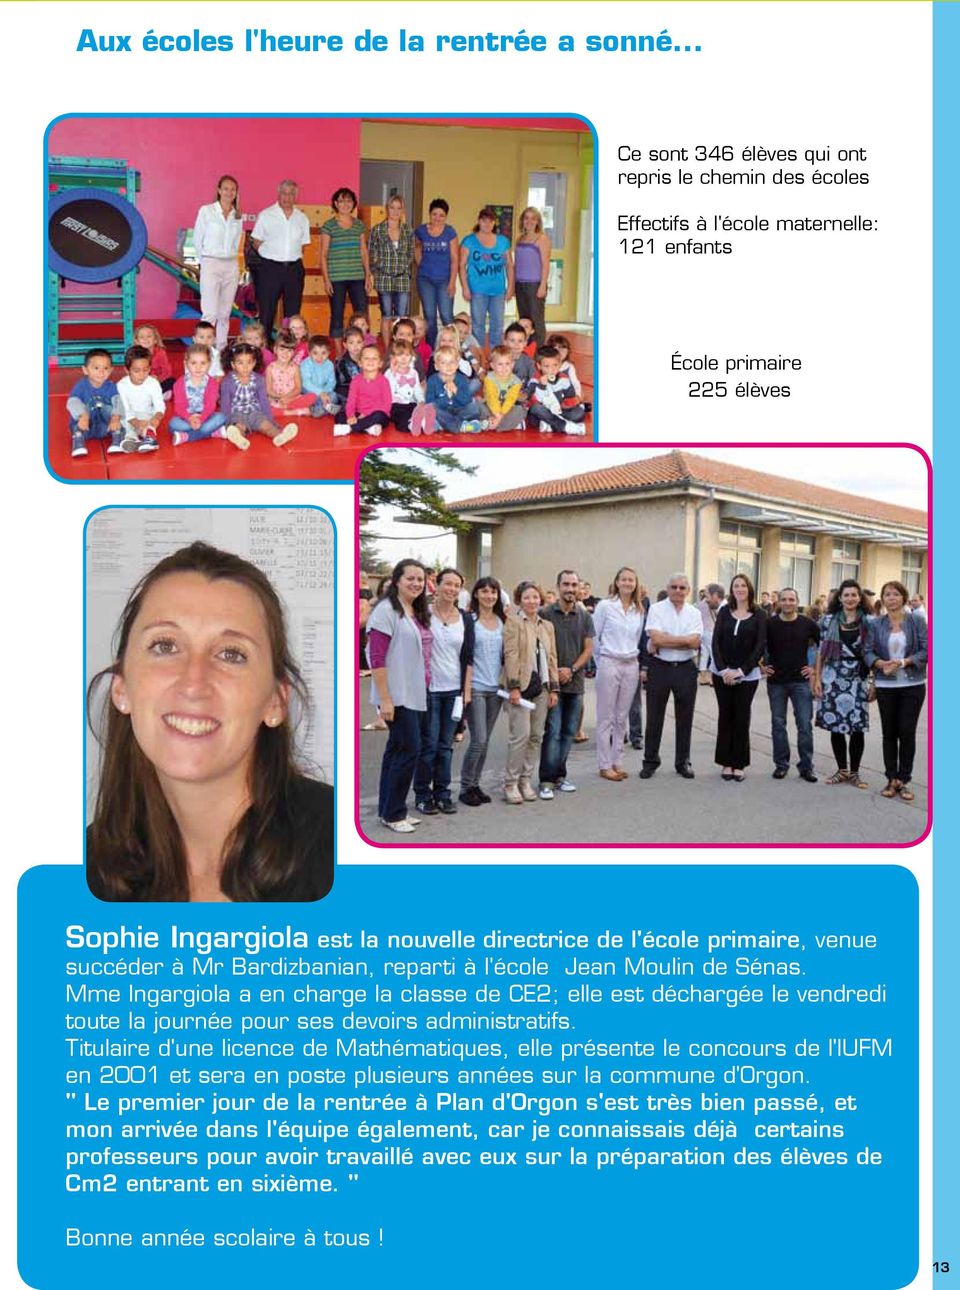 Sophie Ingargiola est la nouvelle directrice de l'école primaire, venue succéder à Mr Bardizbanian, reparti à l'école Jean Moulin de Sénas.